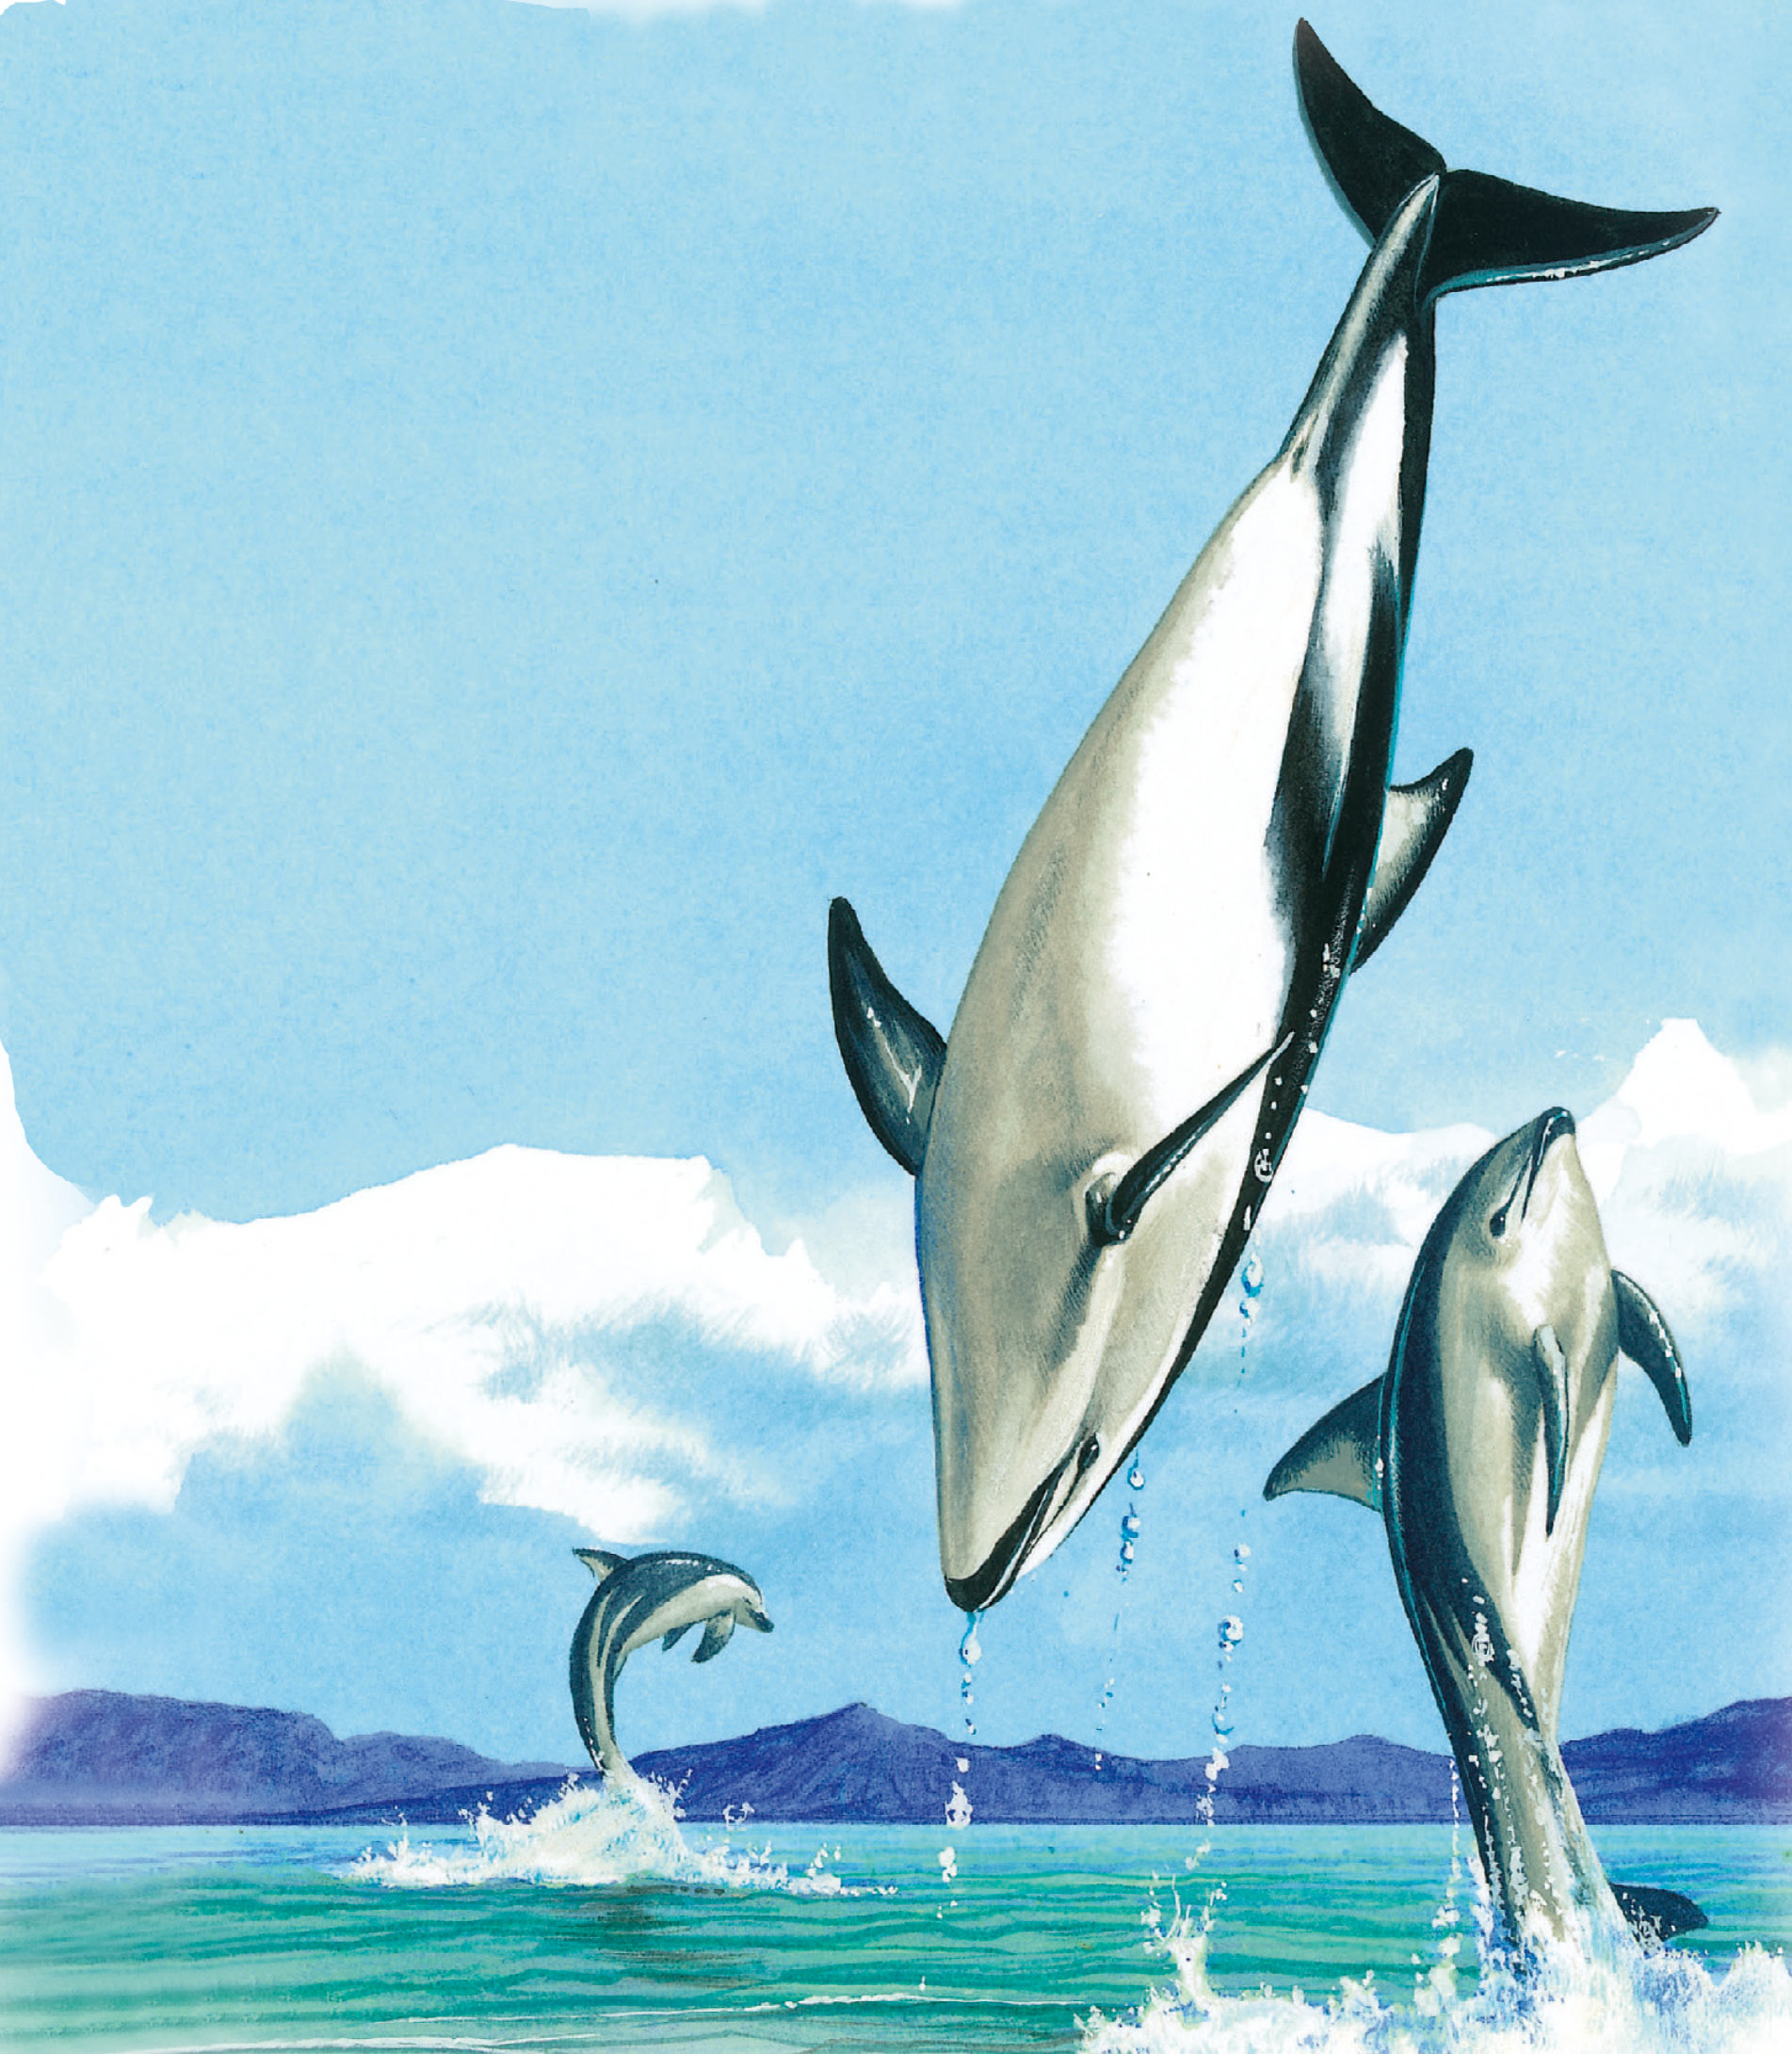 鲸和海豚